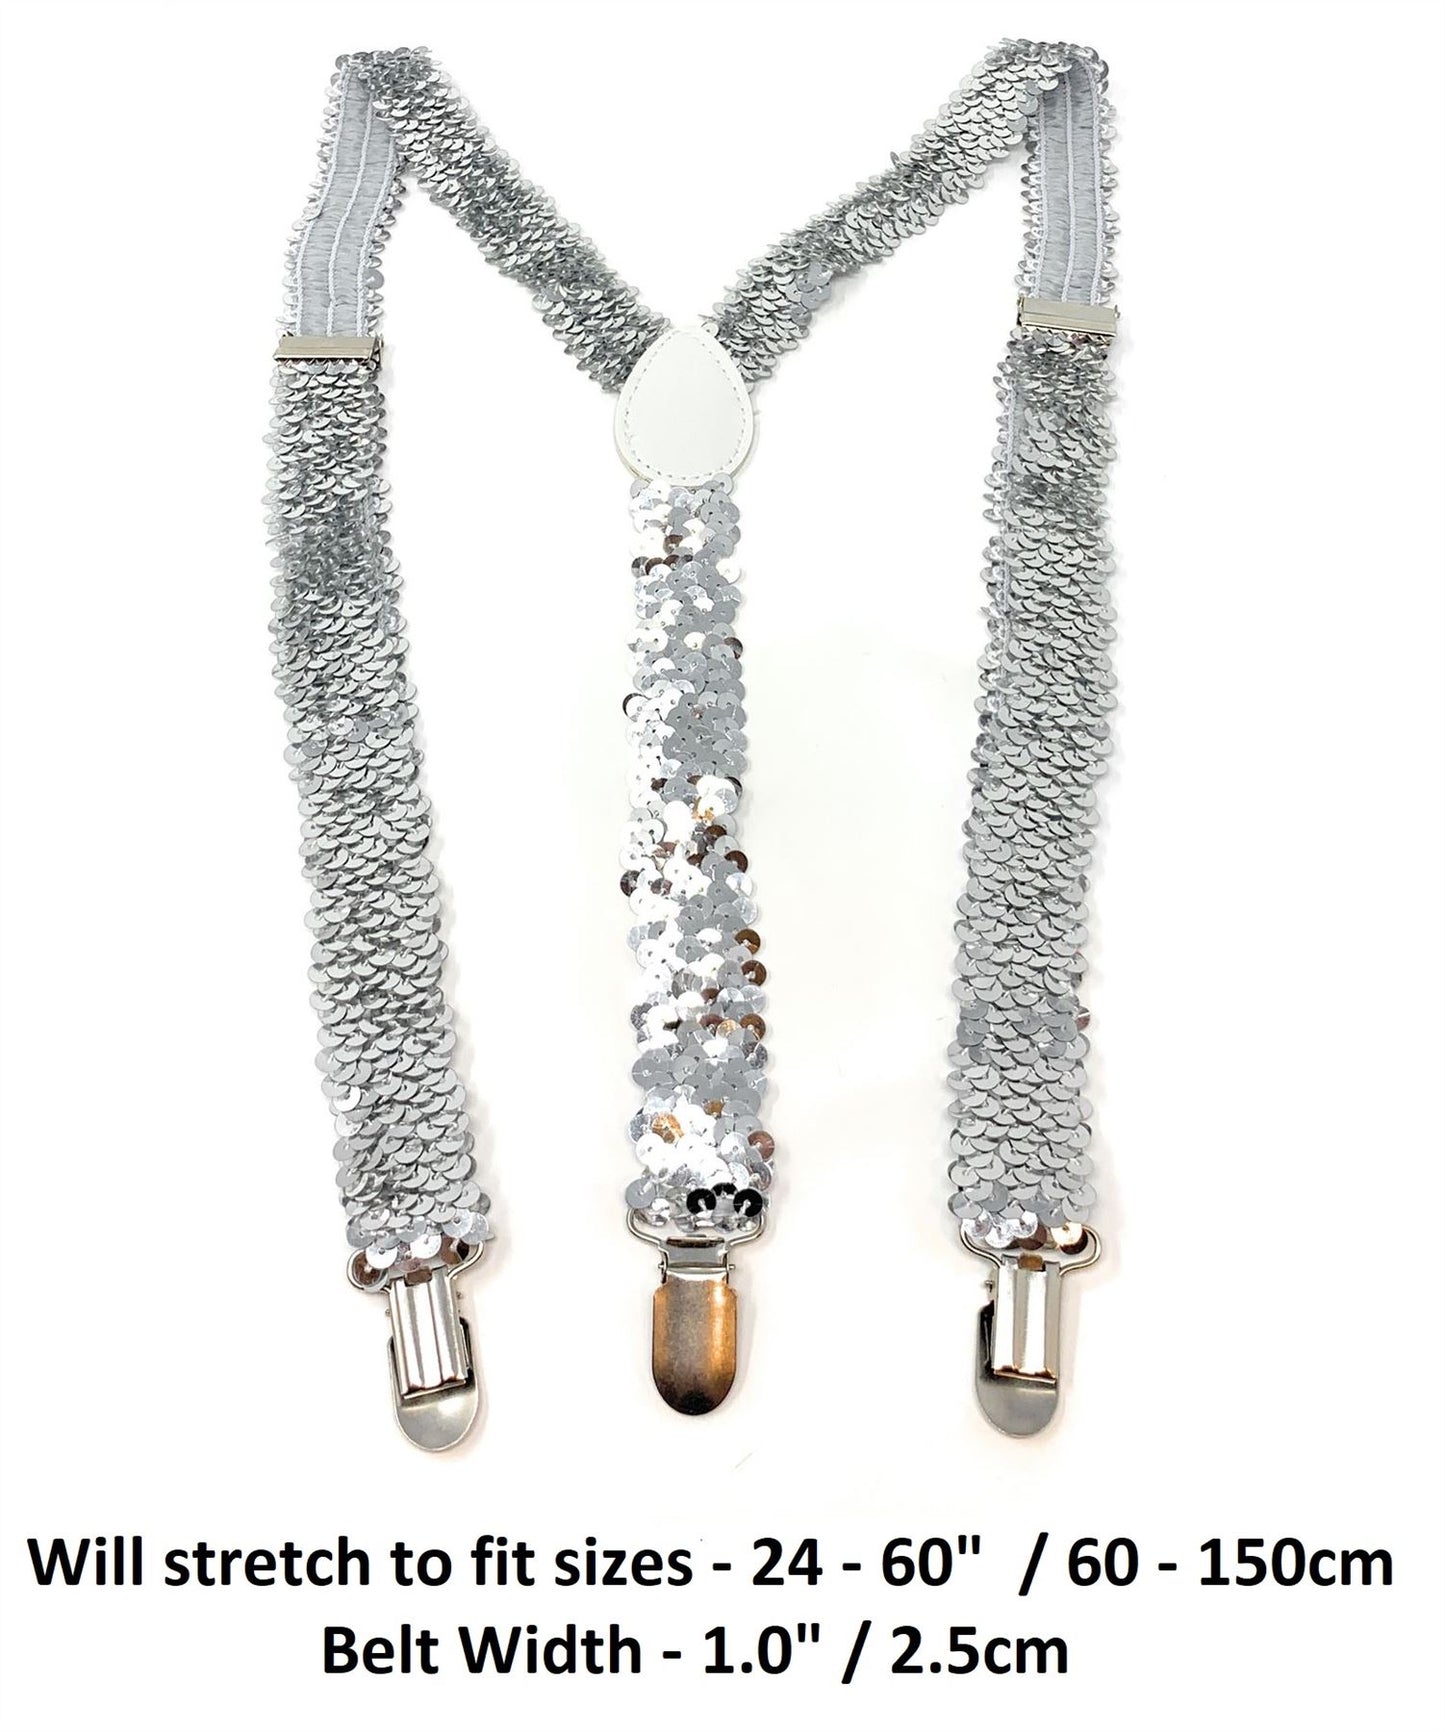 Sequin Fancy Dress Suspenders Clip On Elastic Braces Adjustable New